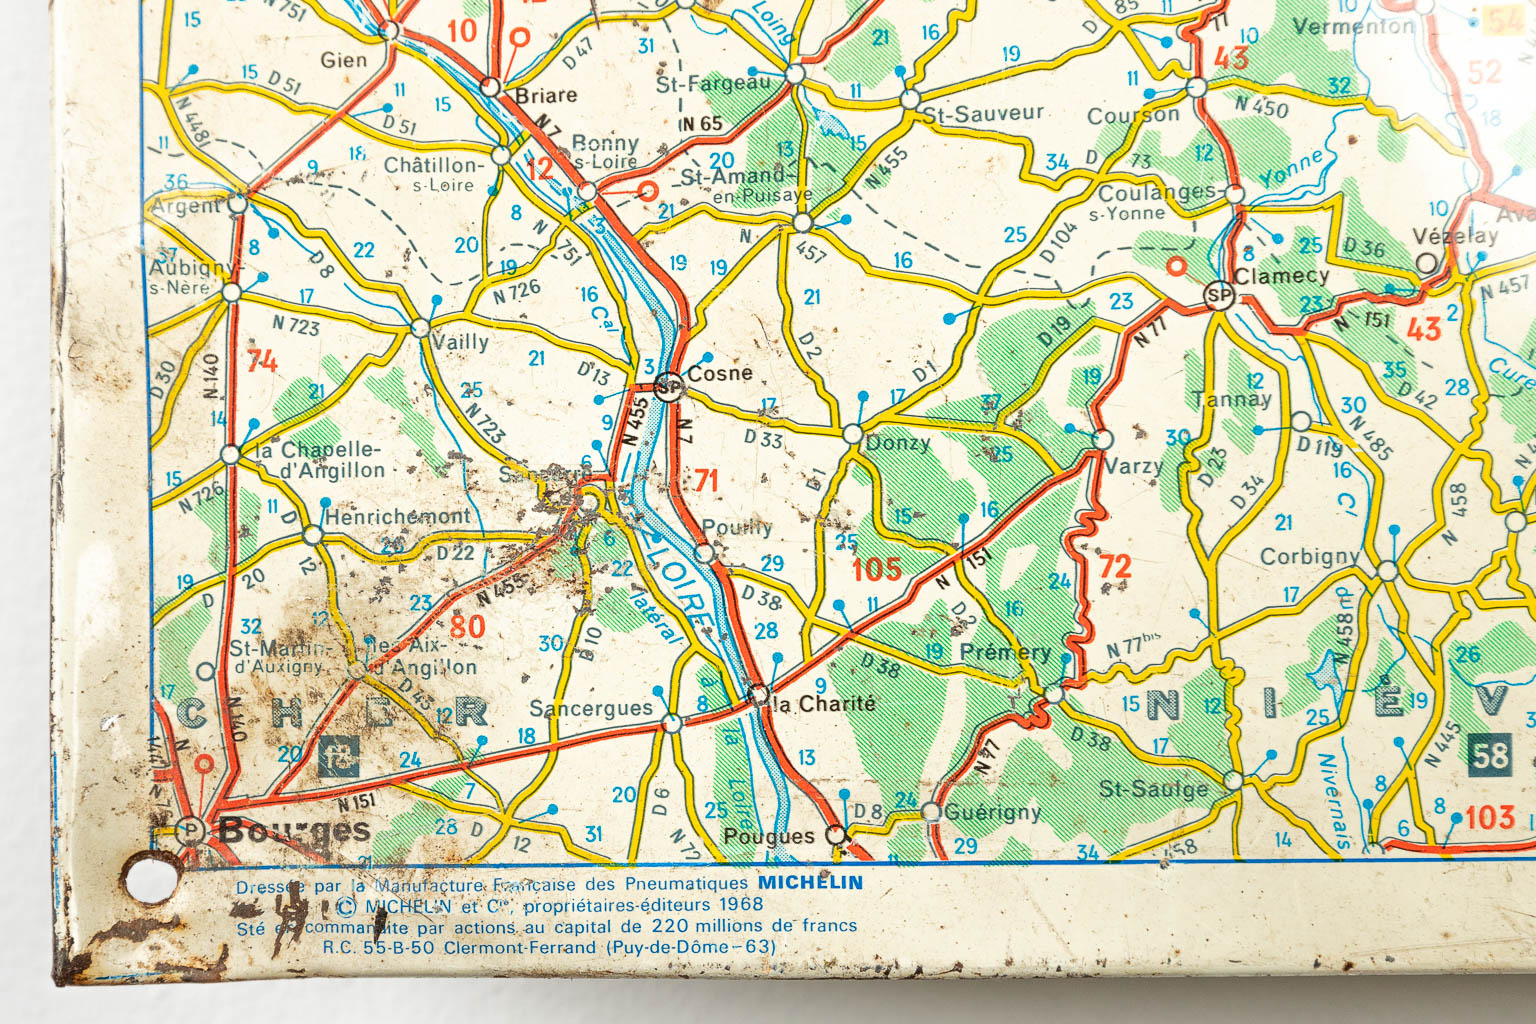 Een vintage metalen wegenkaart gemaakt door Michelin, kaart van de BeNeLux 1968-1969. (H:79cm)